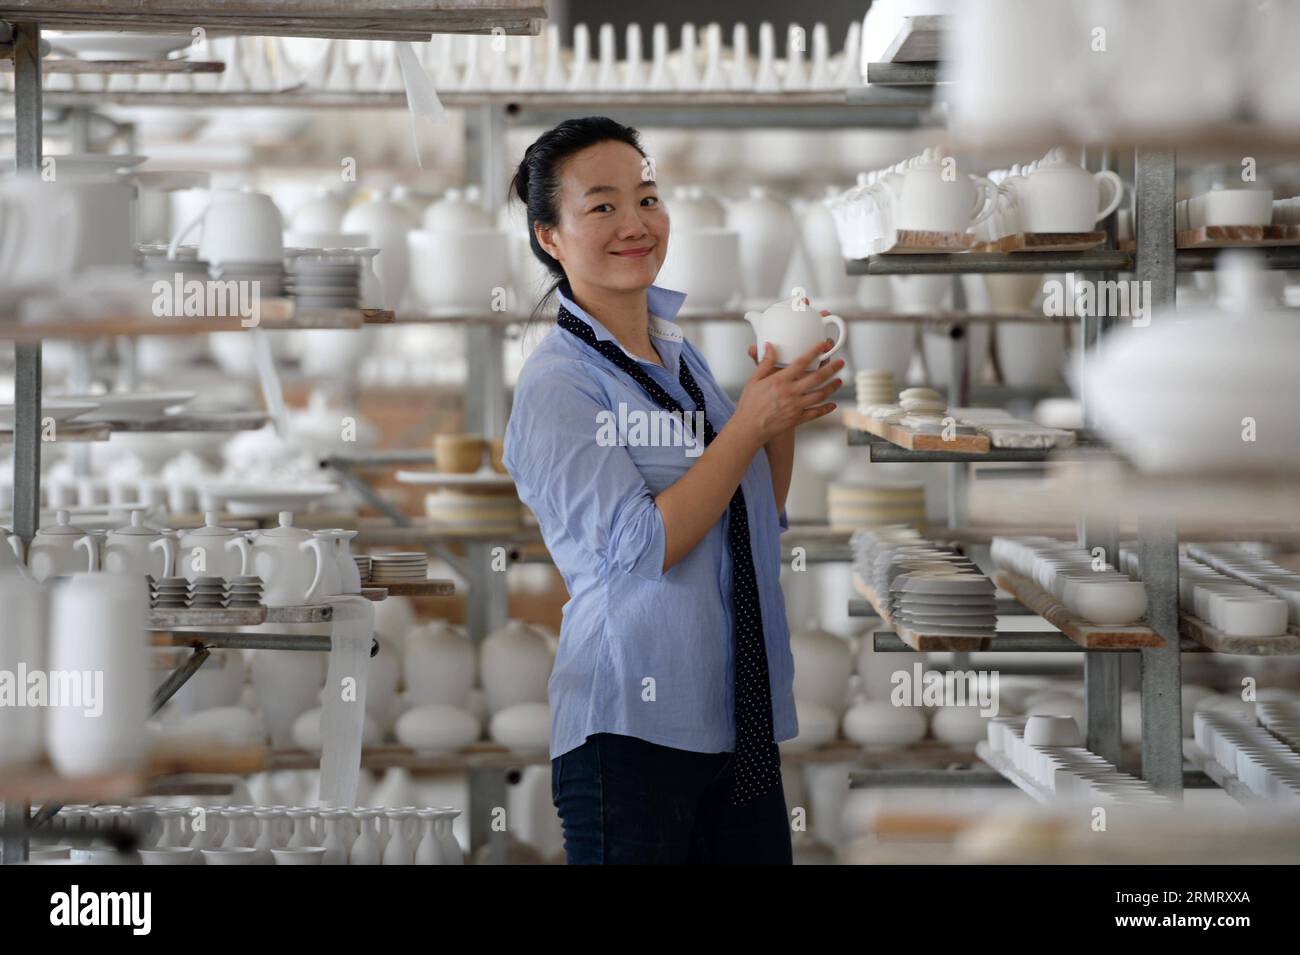 (140806) -- PECHINO, 6 agosto 2014 -- Zhang Lingyun acquista basi di ceramica incombusta a Jingdezhen, provincia dello Jiangxi della Cina orientale, 18 luglio 2014. Zhang Lingyun ha 40 anni. Sono passati 20 anni da quando l'artista ceramico è venuto a Jingdezhen, capitale della porcellana cinese. La storia di Zhang con la ceramica ebbe un inizio casuale e romantico: Sapeva quasi nulla di ceramica prima di imbattersi nel nome Jingdezhen Ceramic Institute (JCI) quando si iscriveva al college. La ceramica sembrava interessante, quindi ho presentato la domanda per la JCI. Il capriccio d'impulso aveva fatto una grande differenza nella vita di Zhang. Il suo primo contatto con Foto Stock